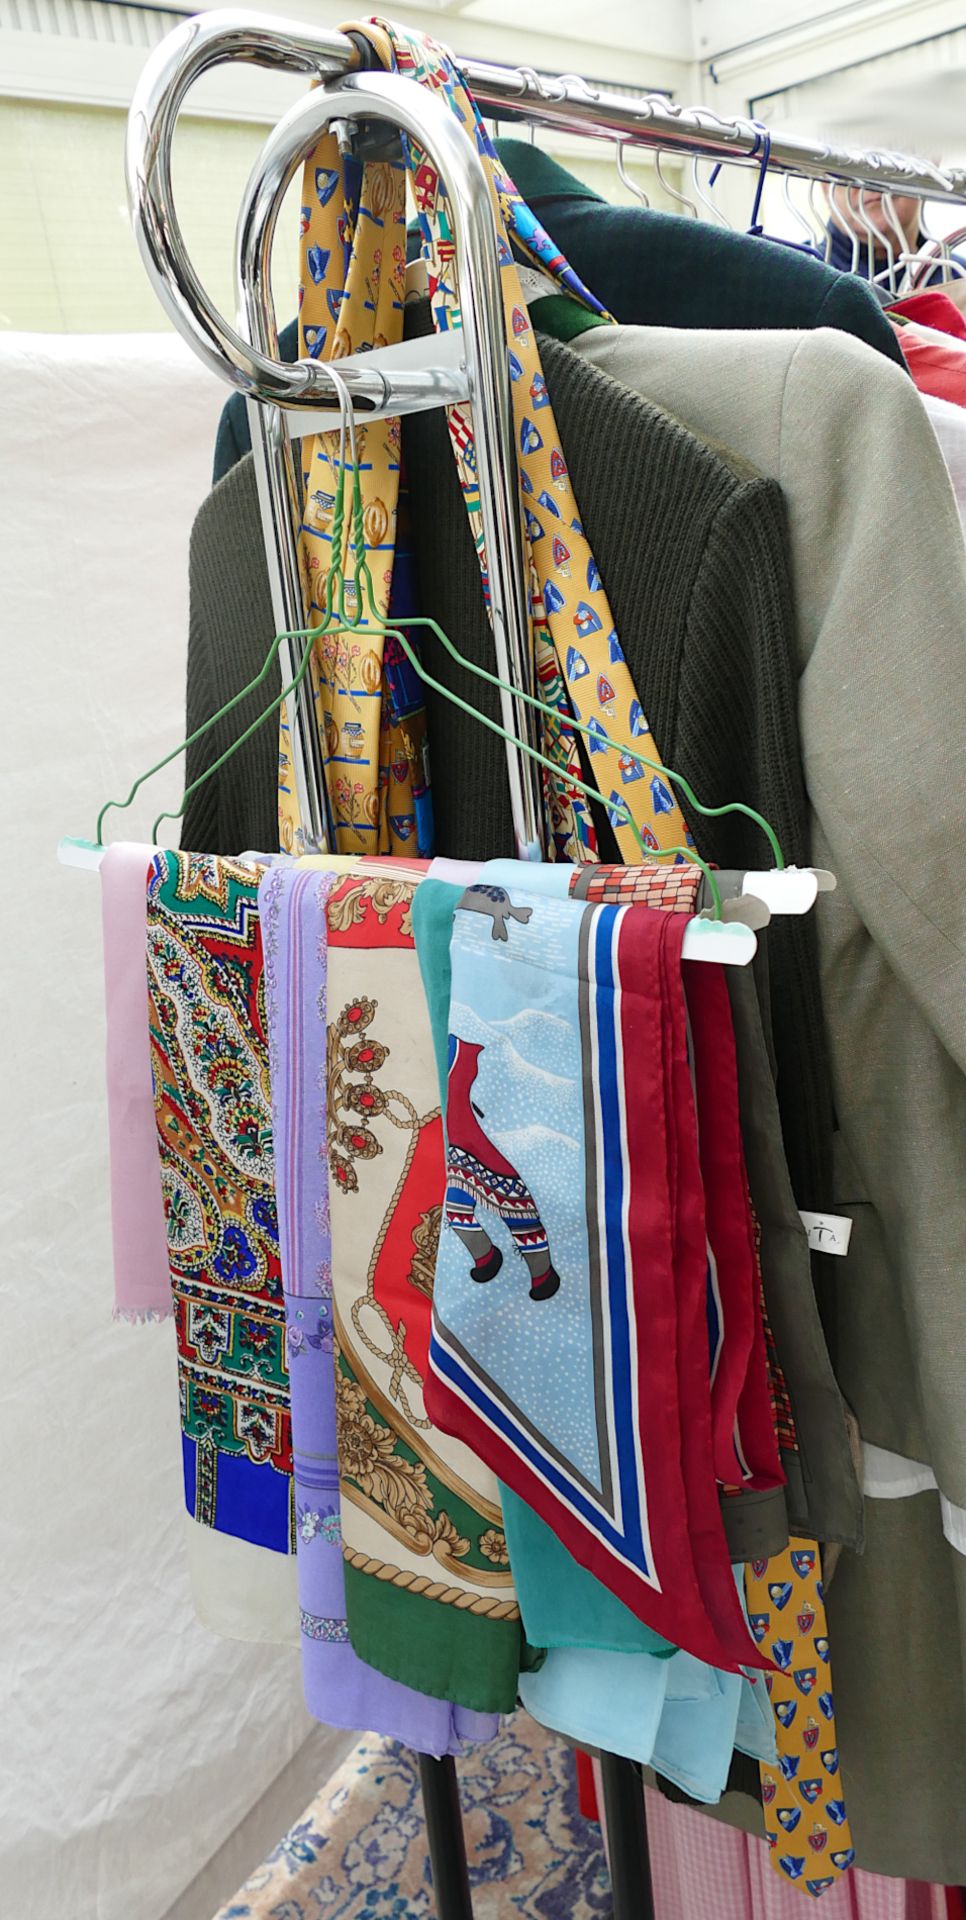 2 Kleiderständer mit Damenkleidung und Pelze, Taschen, Tücher, ca Gr. 36/38, Trachtenmode z.T. Loden - Bild 3 aus 4